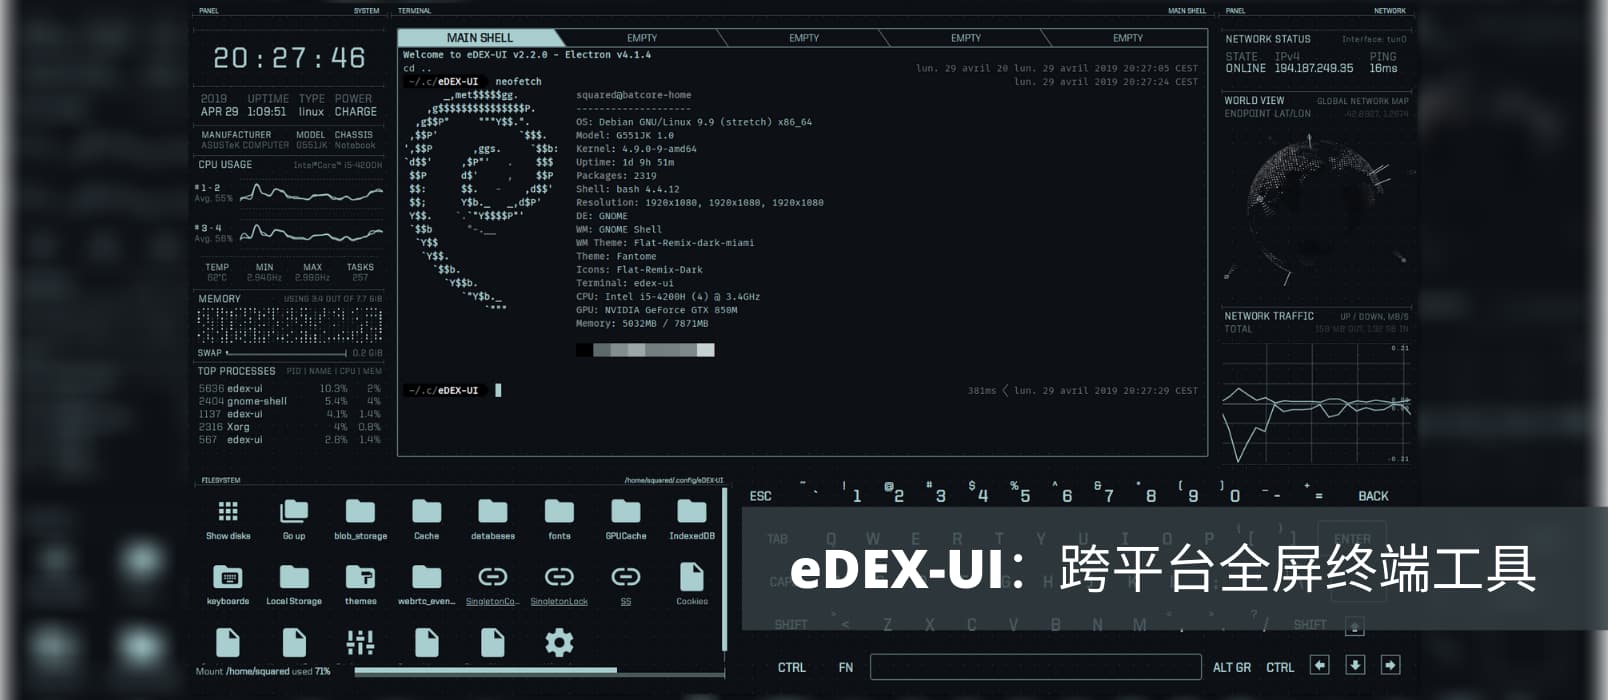 eDEX-UI - 炫酷跨平台全屏终端工具，可直接拿去拍电影